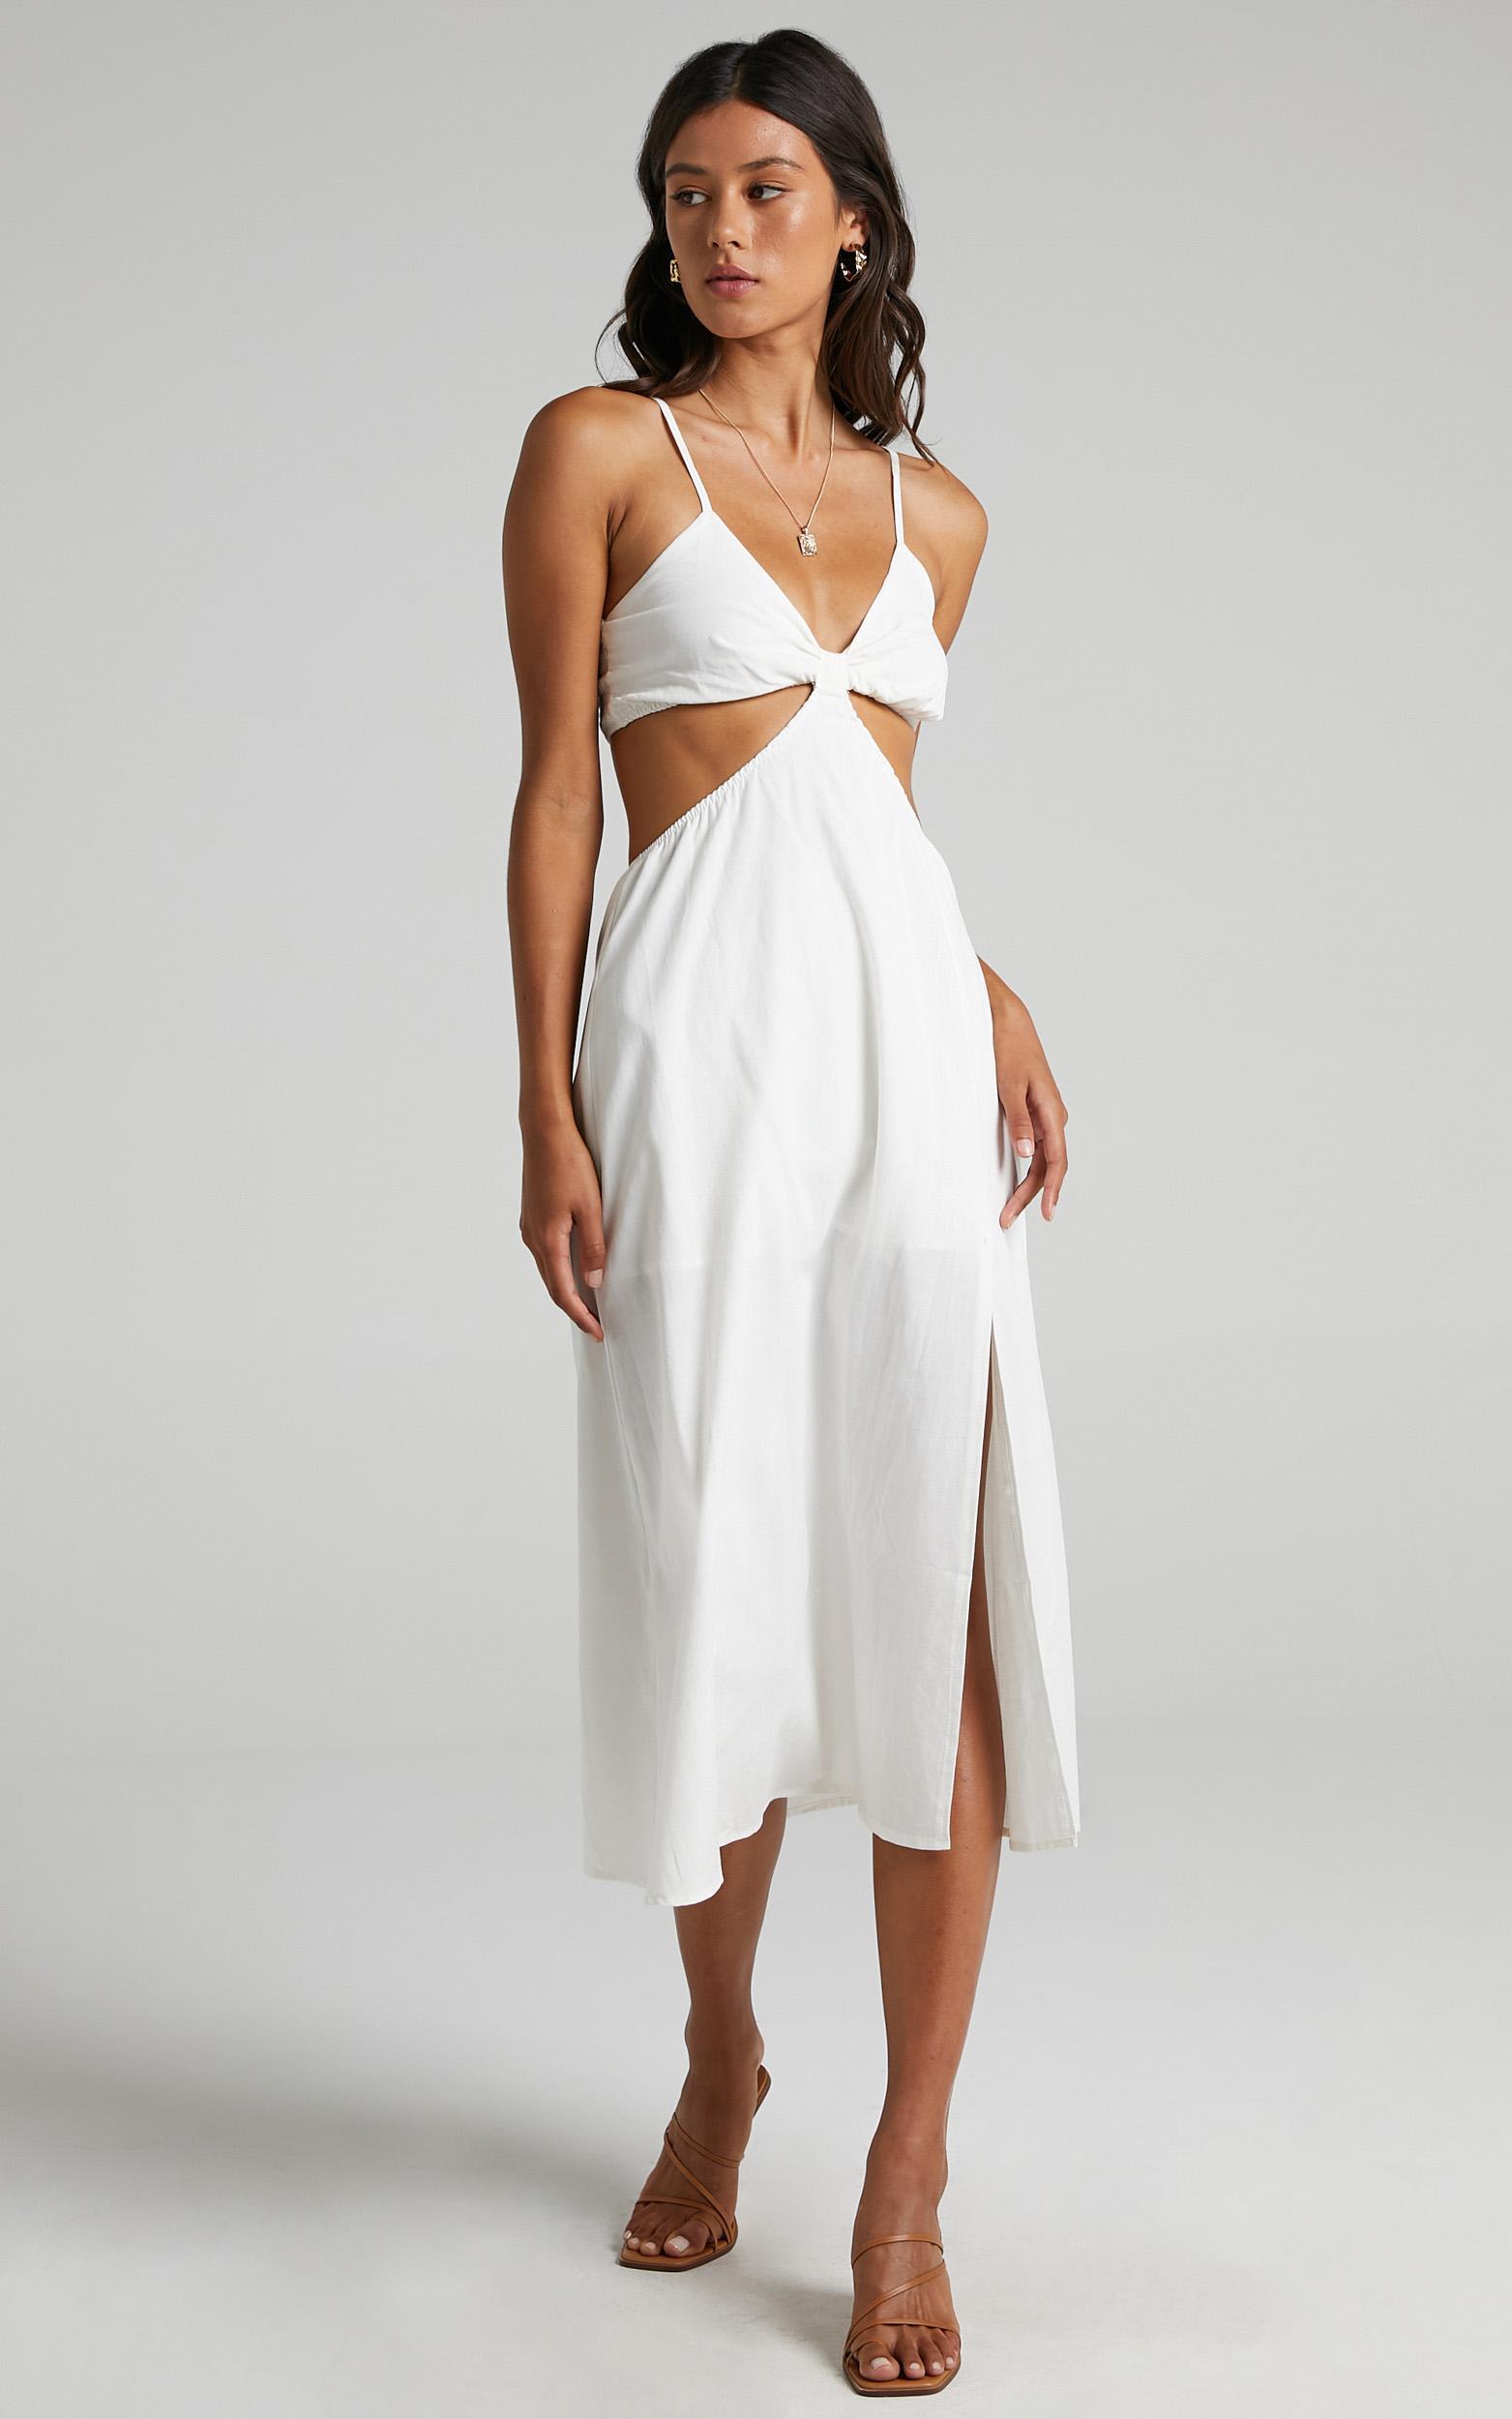 Melyssa Dress in White | Showpo USA